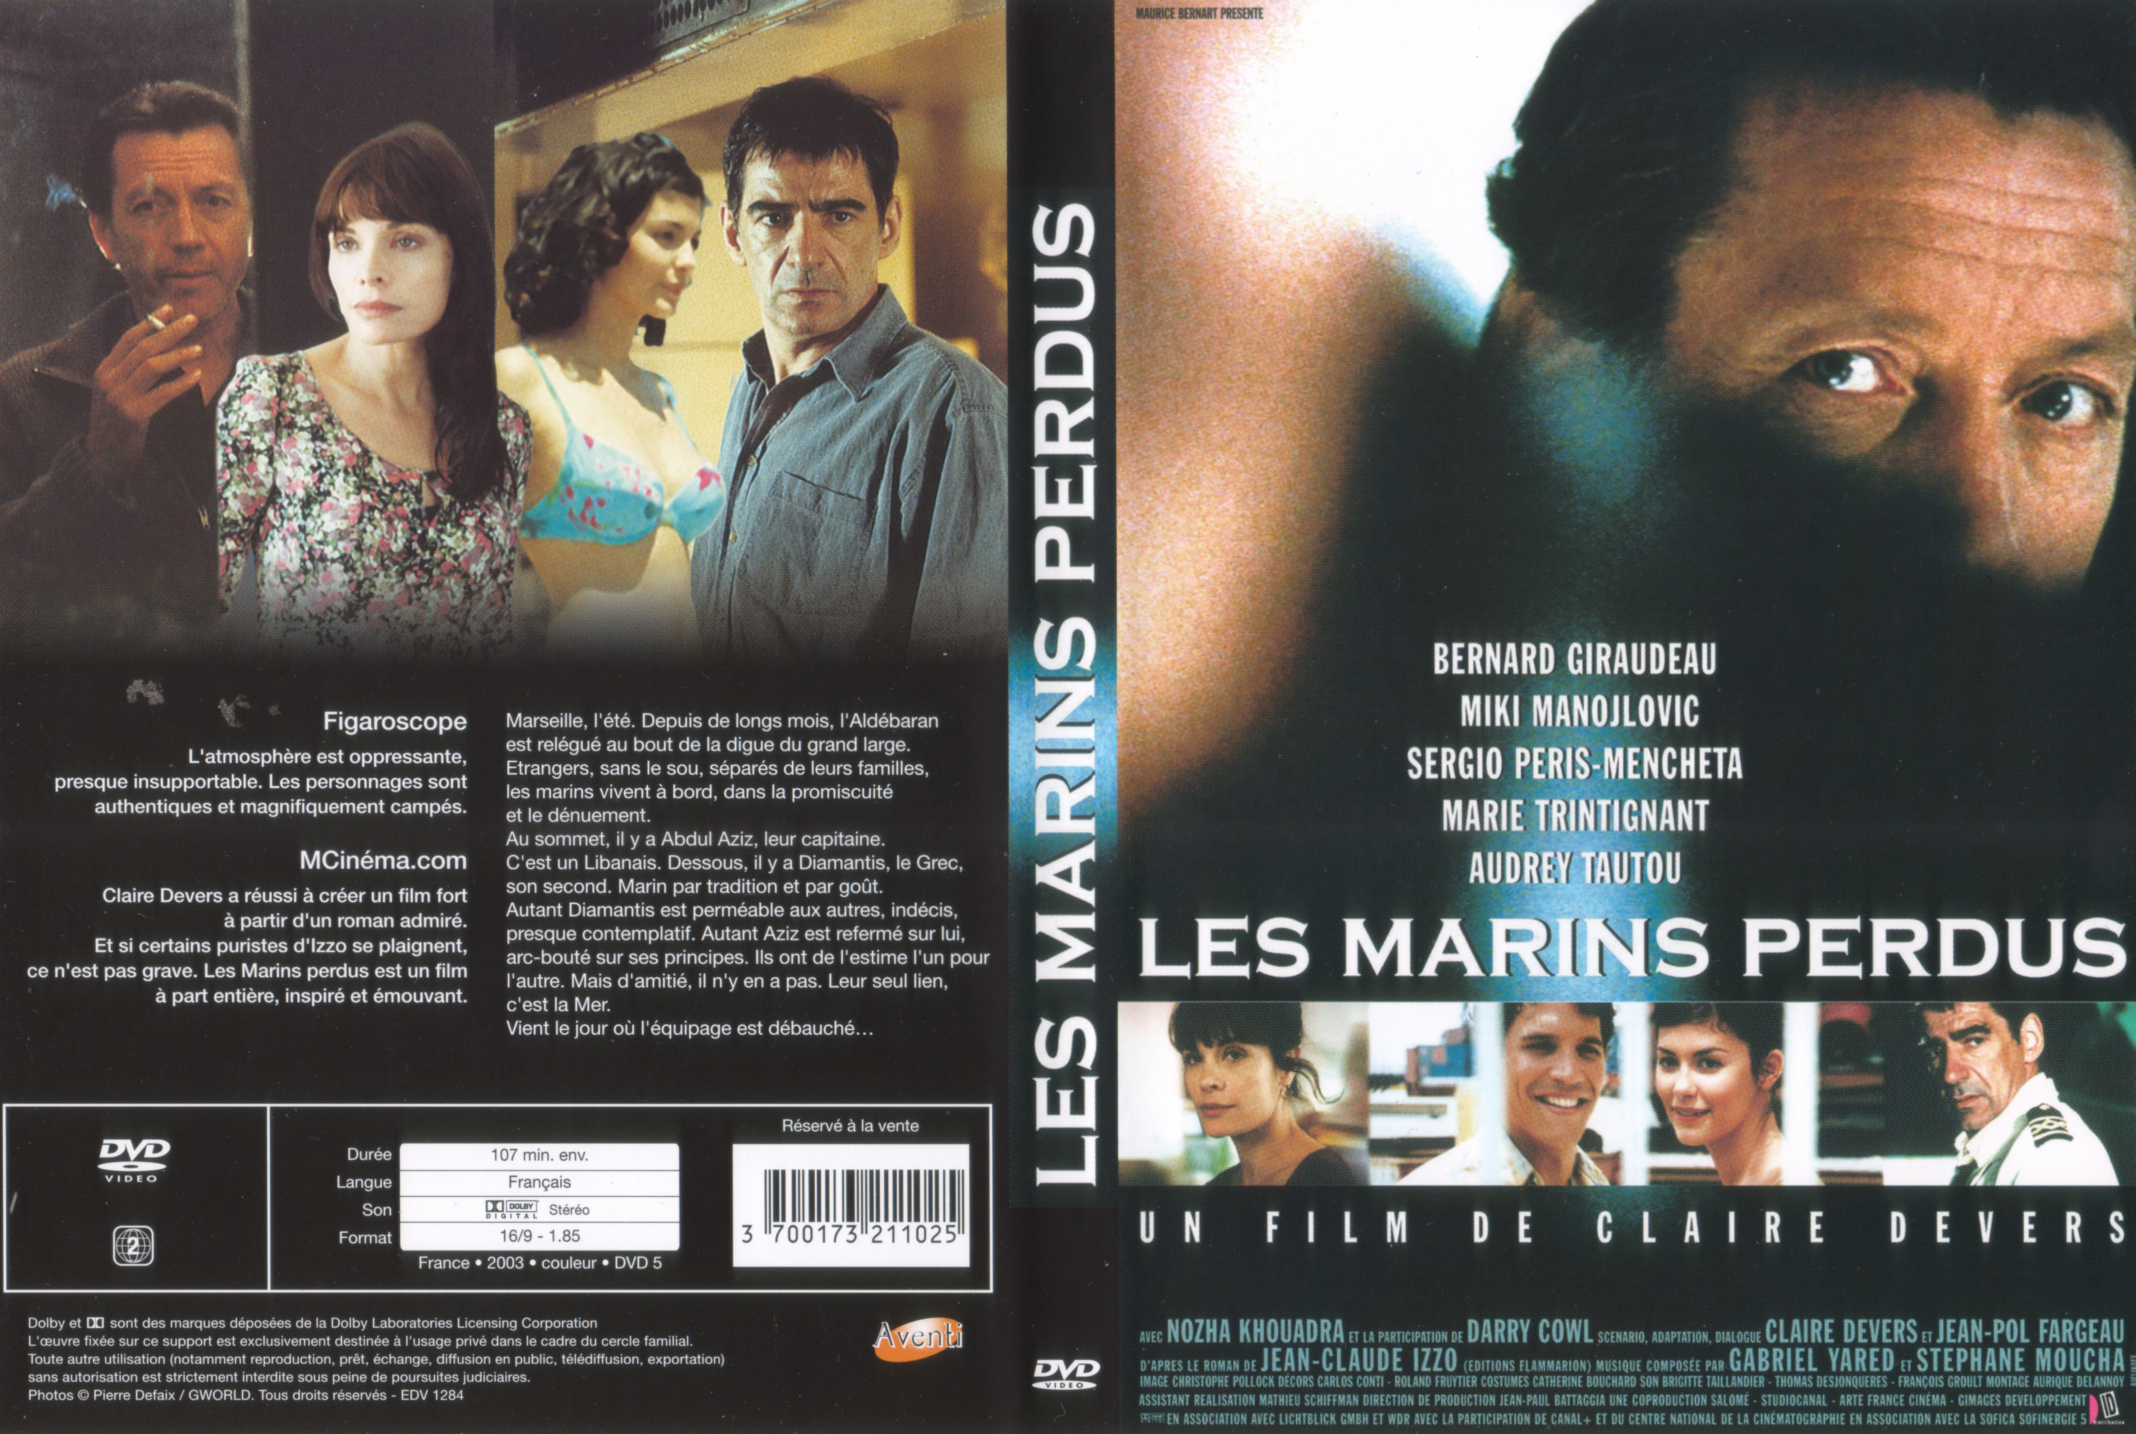 Jaquette DVD Les marins perdus